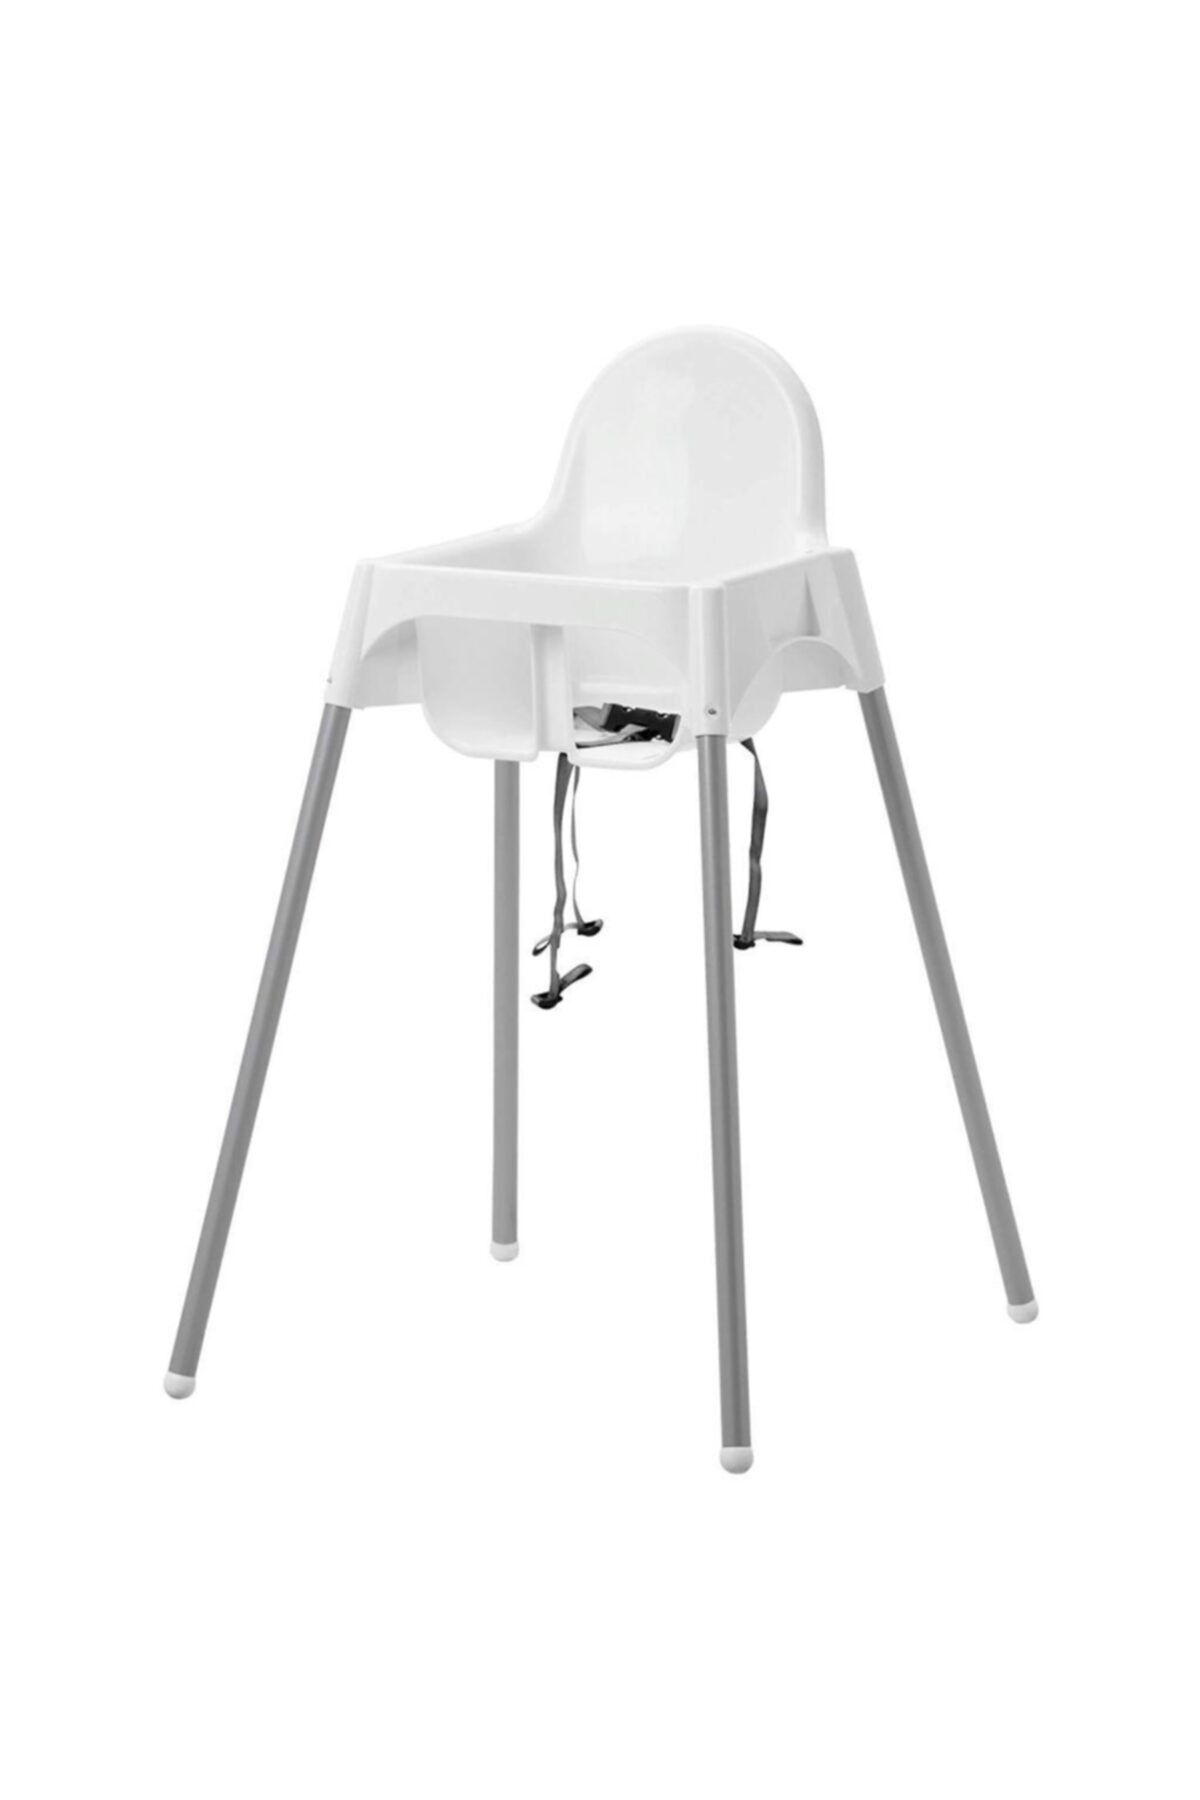 IKEA Antilop Mama Sandalyesi Emniyet Kemerli